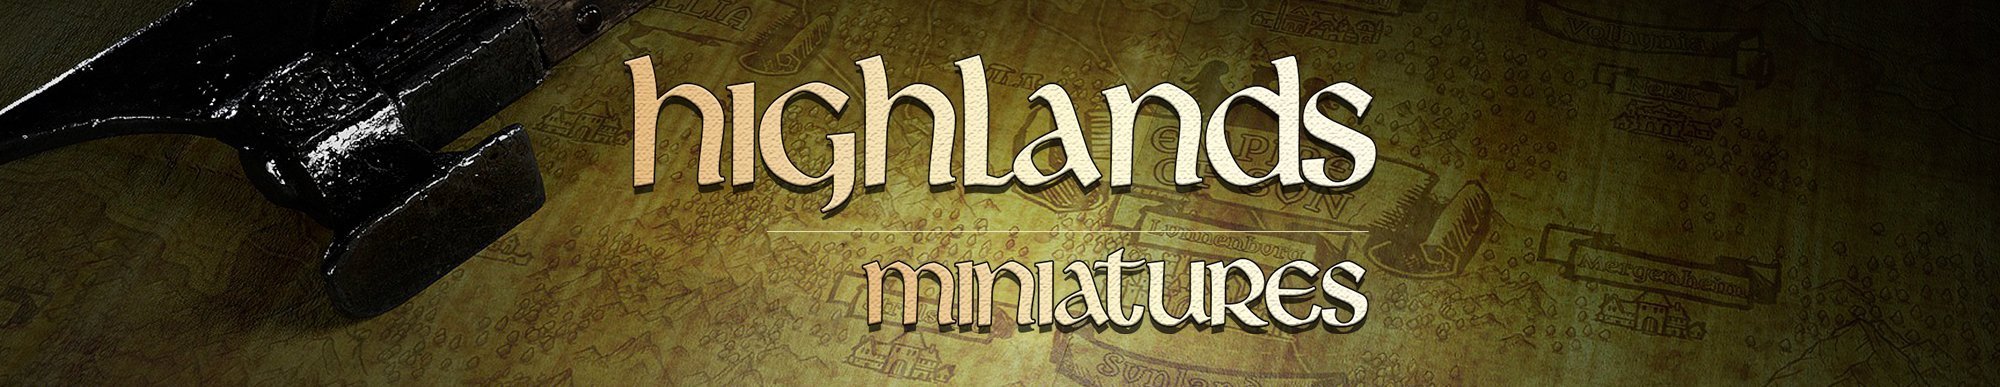 Buy Highlands Miniatures wargaming miniatures